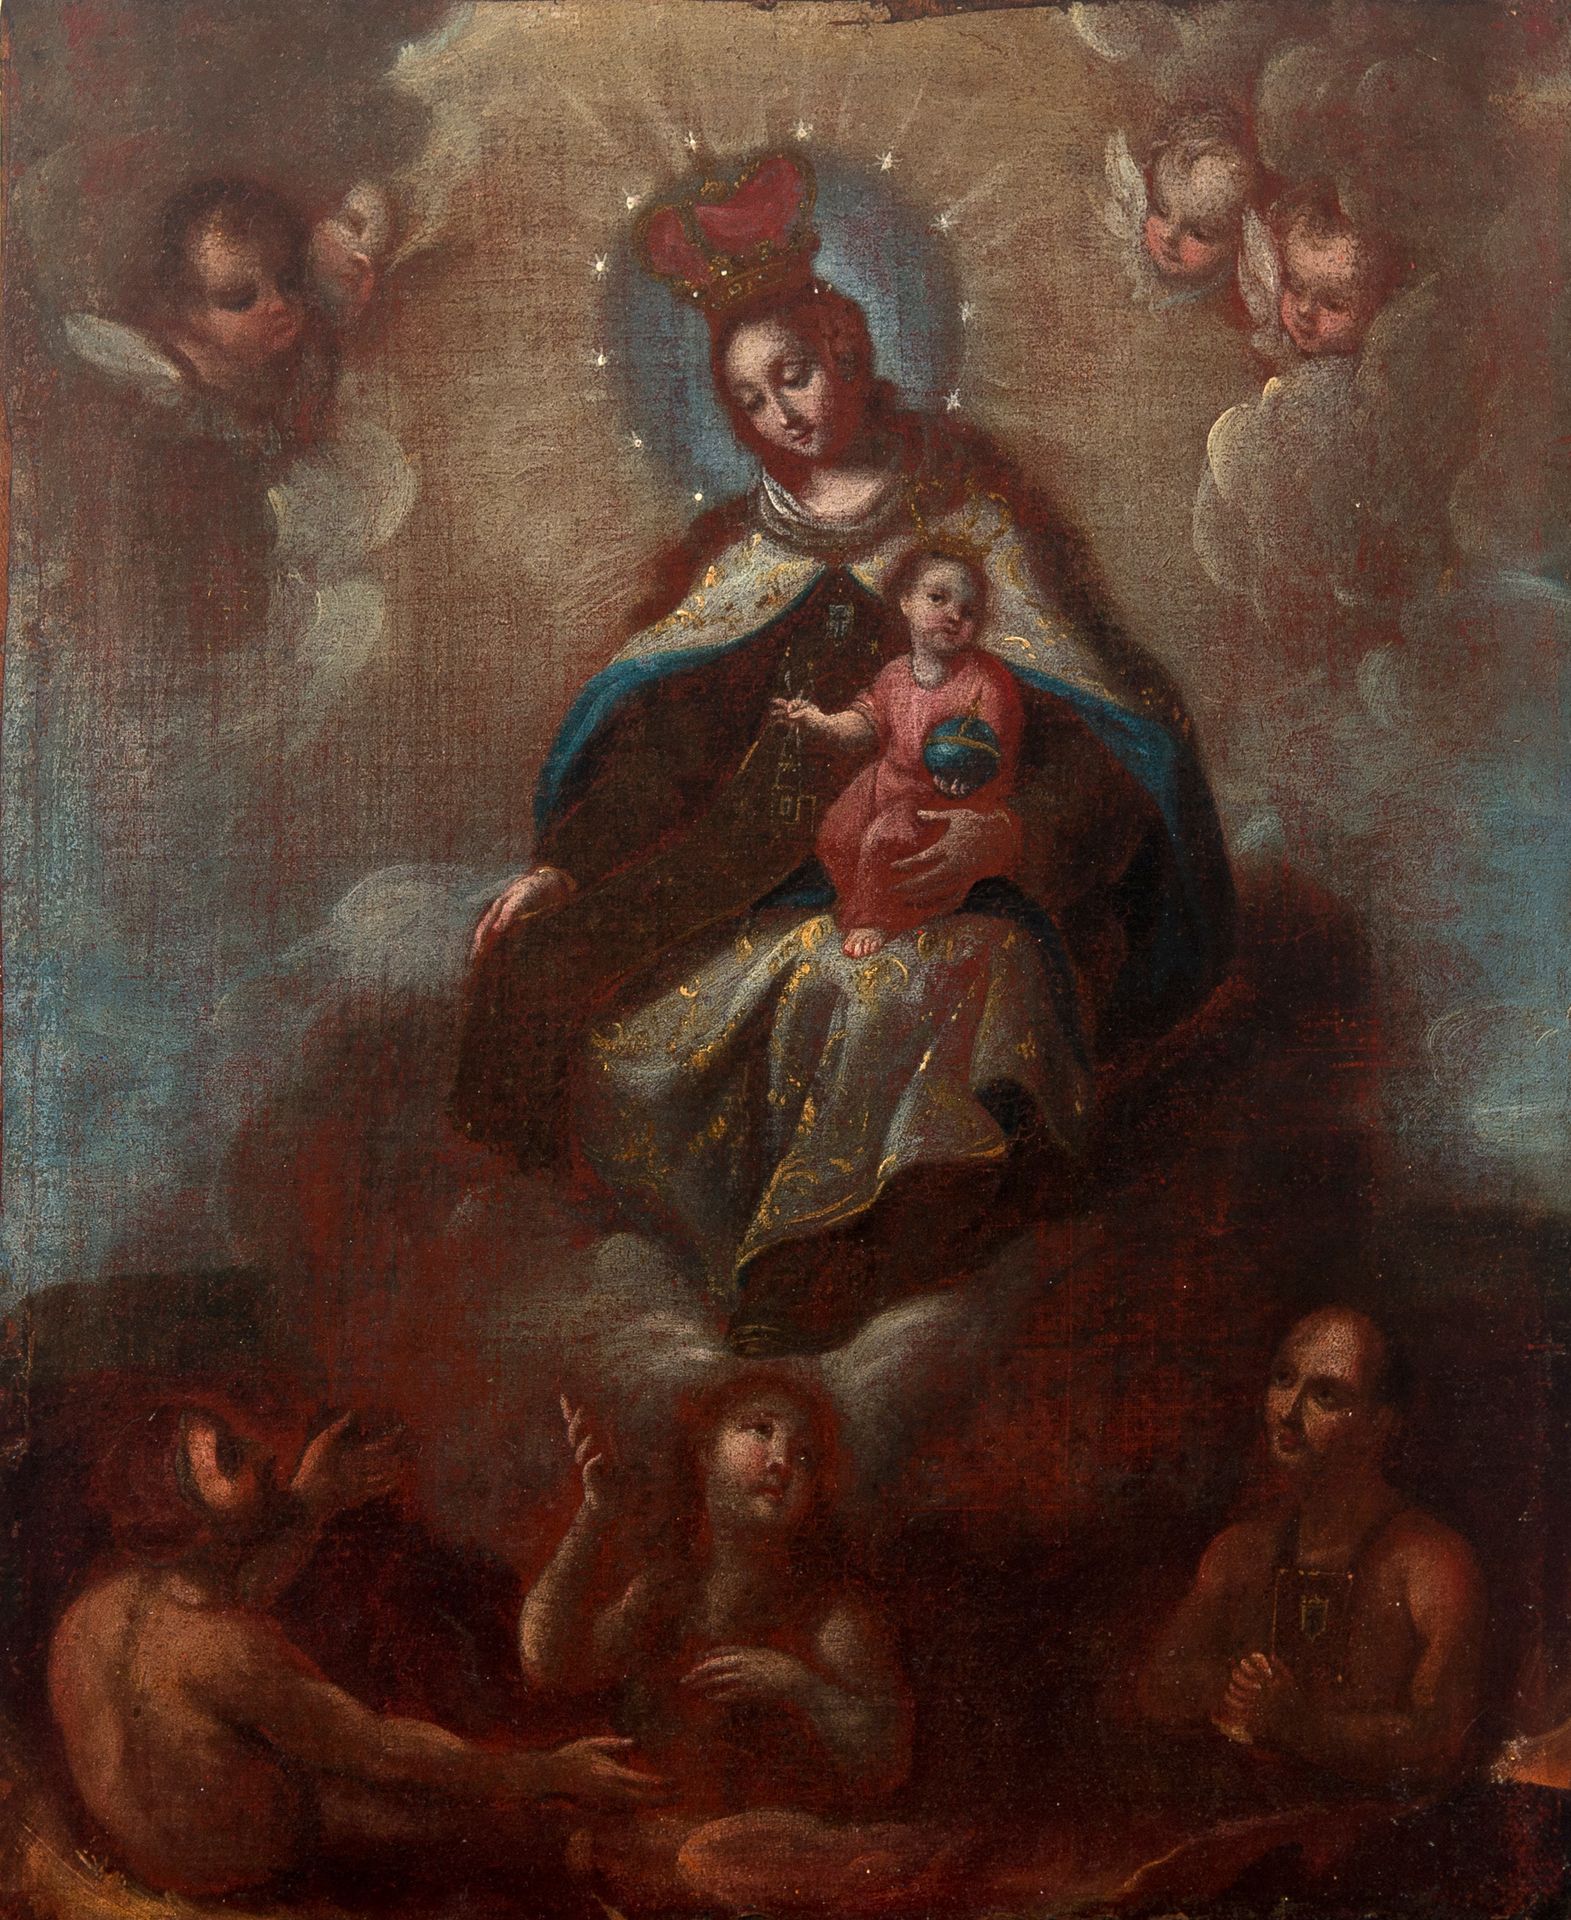 Attributed to Miguel Cabrera (Antequera de Oaxaca, Mexico, 1715 / 1720 - Mexico,&hellip;